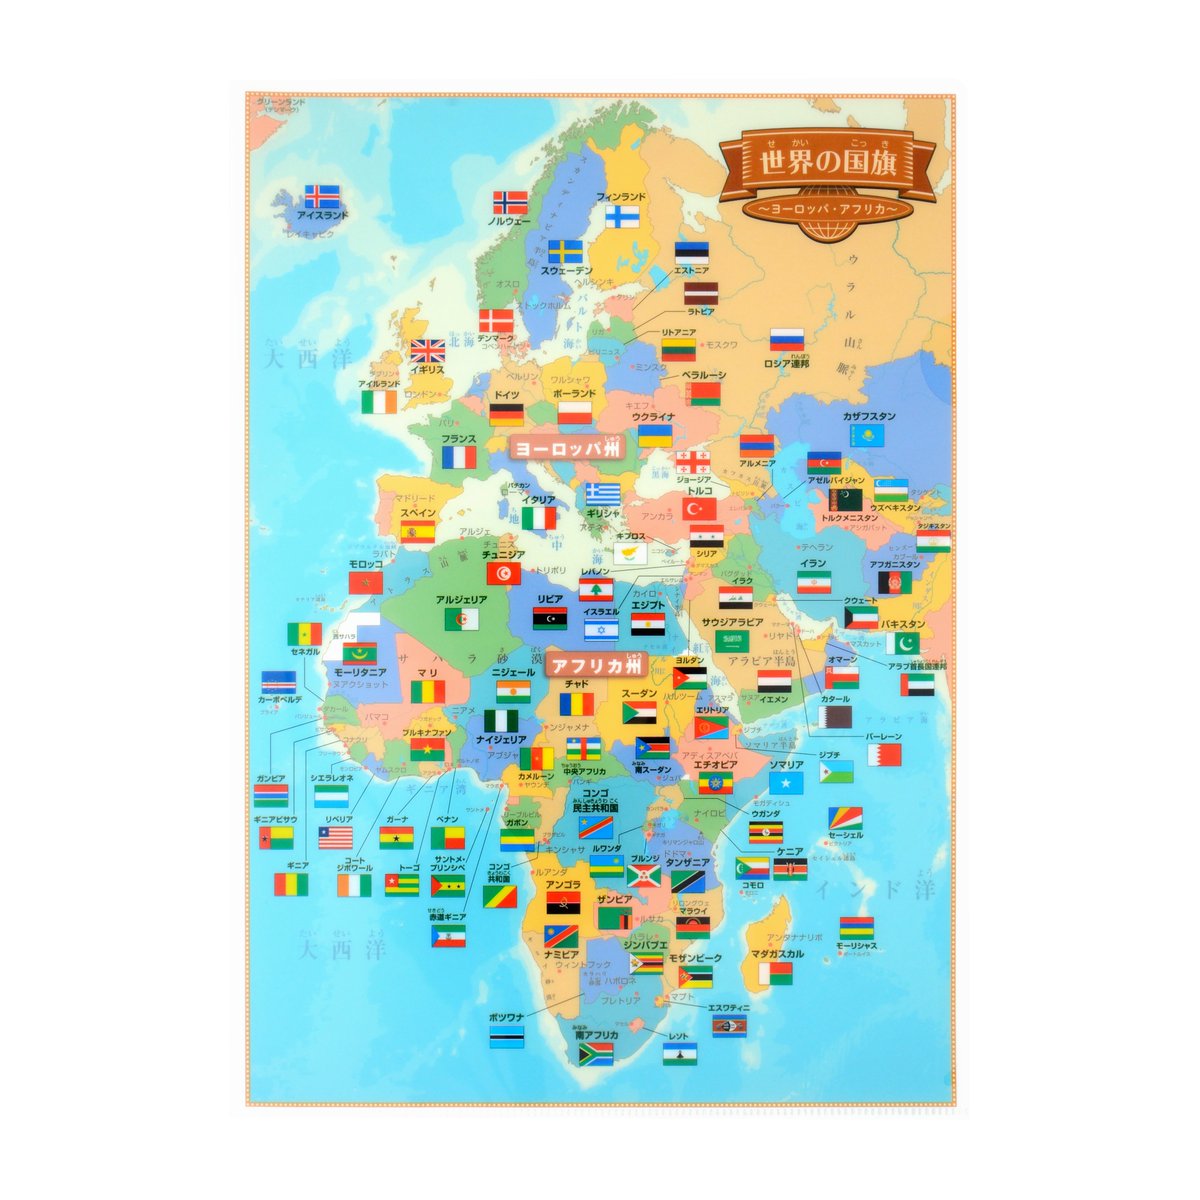 東京カートグラフィック Auf Twitter クリアファイル 世界の国旗 4枚セット T Co Cvtf3eb9zp 世界を4地域に分けたa4のクリアファイルが4枚入っています 世界各国の国旗が学べる世界地図のクリアファイルです 地図面は国別の色分けで 国名 首都名や